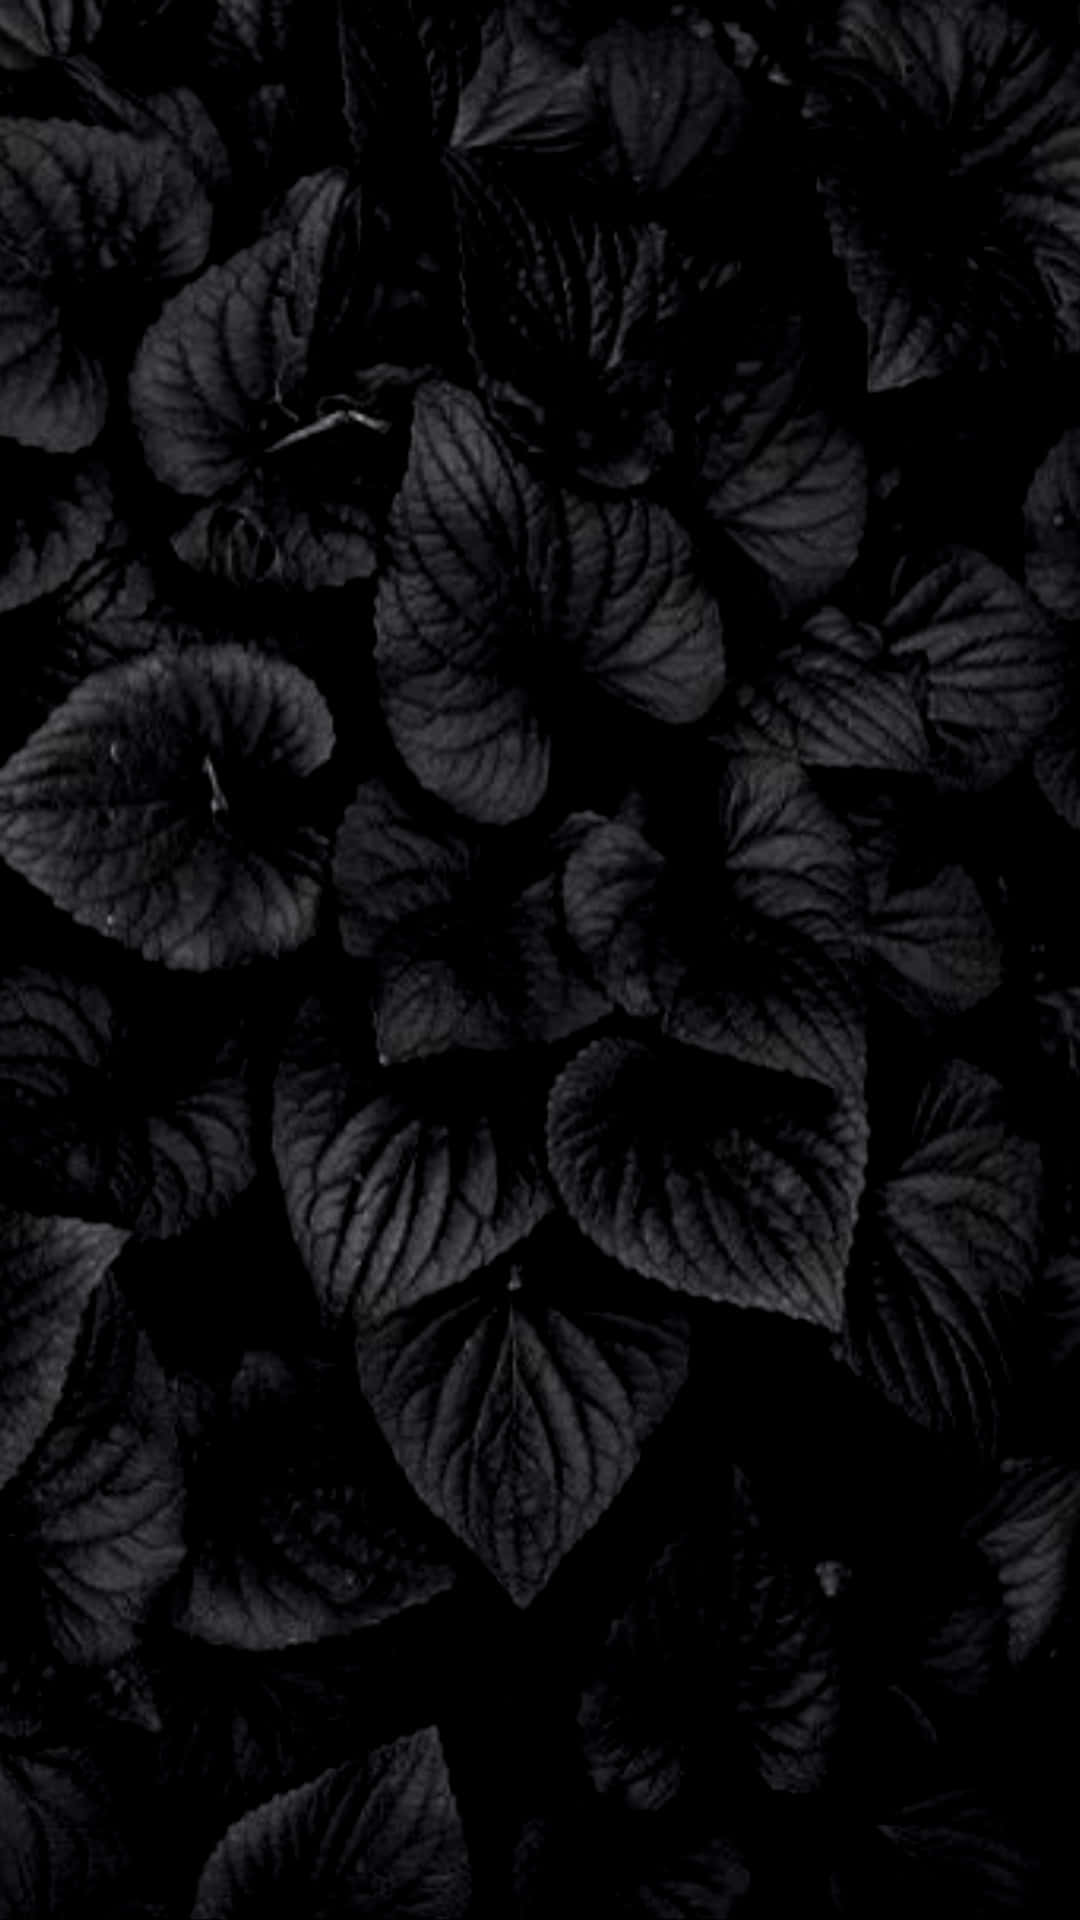 Einschwarzer Hintergrund Mit Blättern Im Dunkeln. Wallpaper